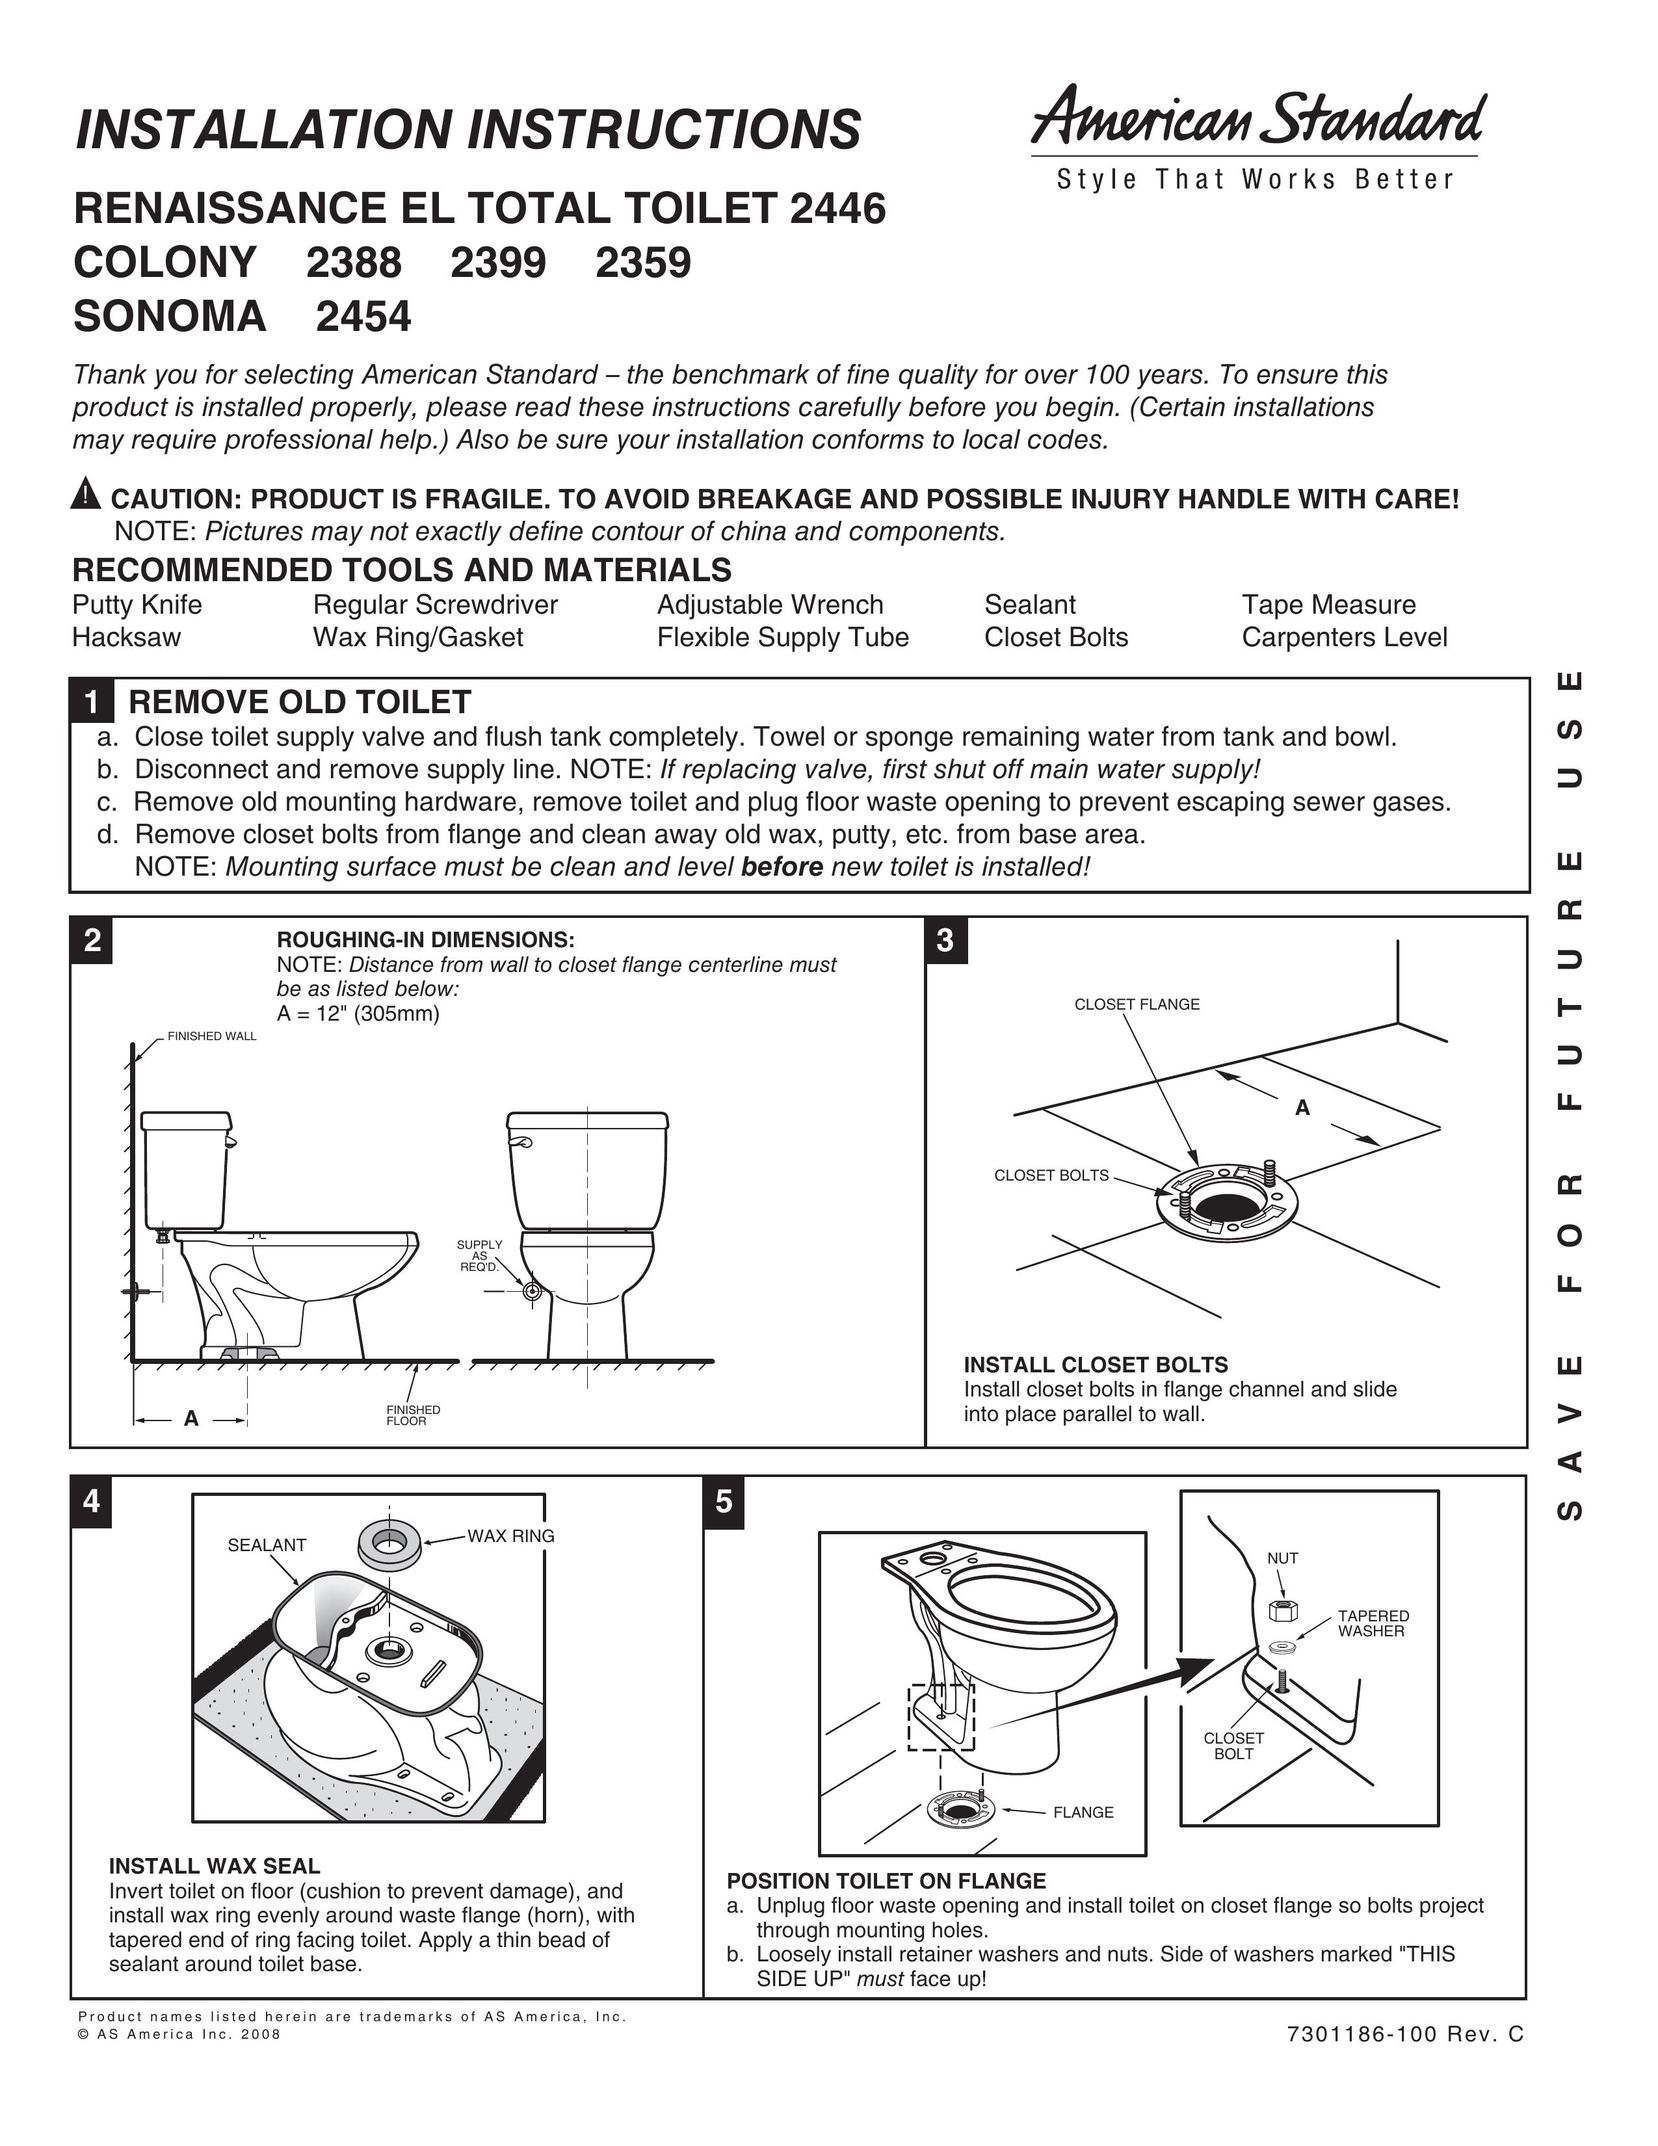 American Standard 2446 Plumbing Product User Manual